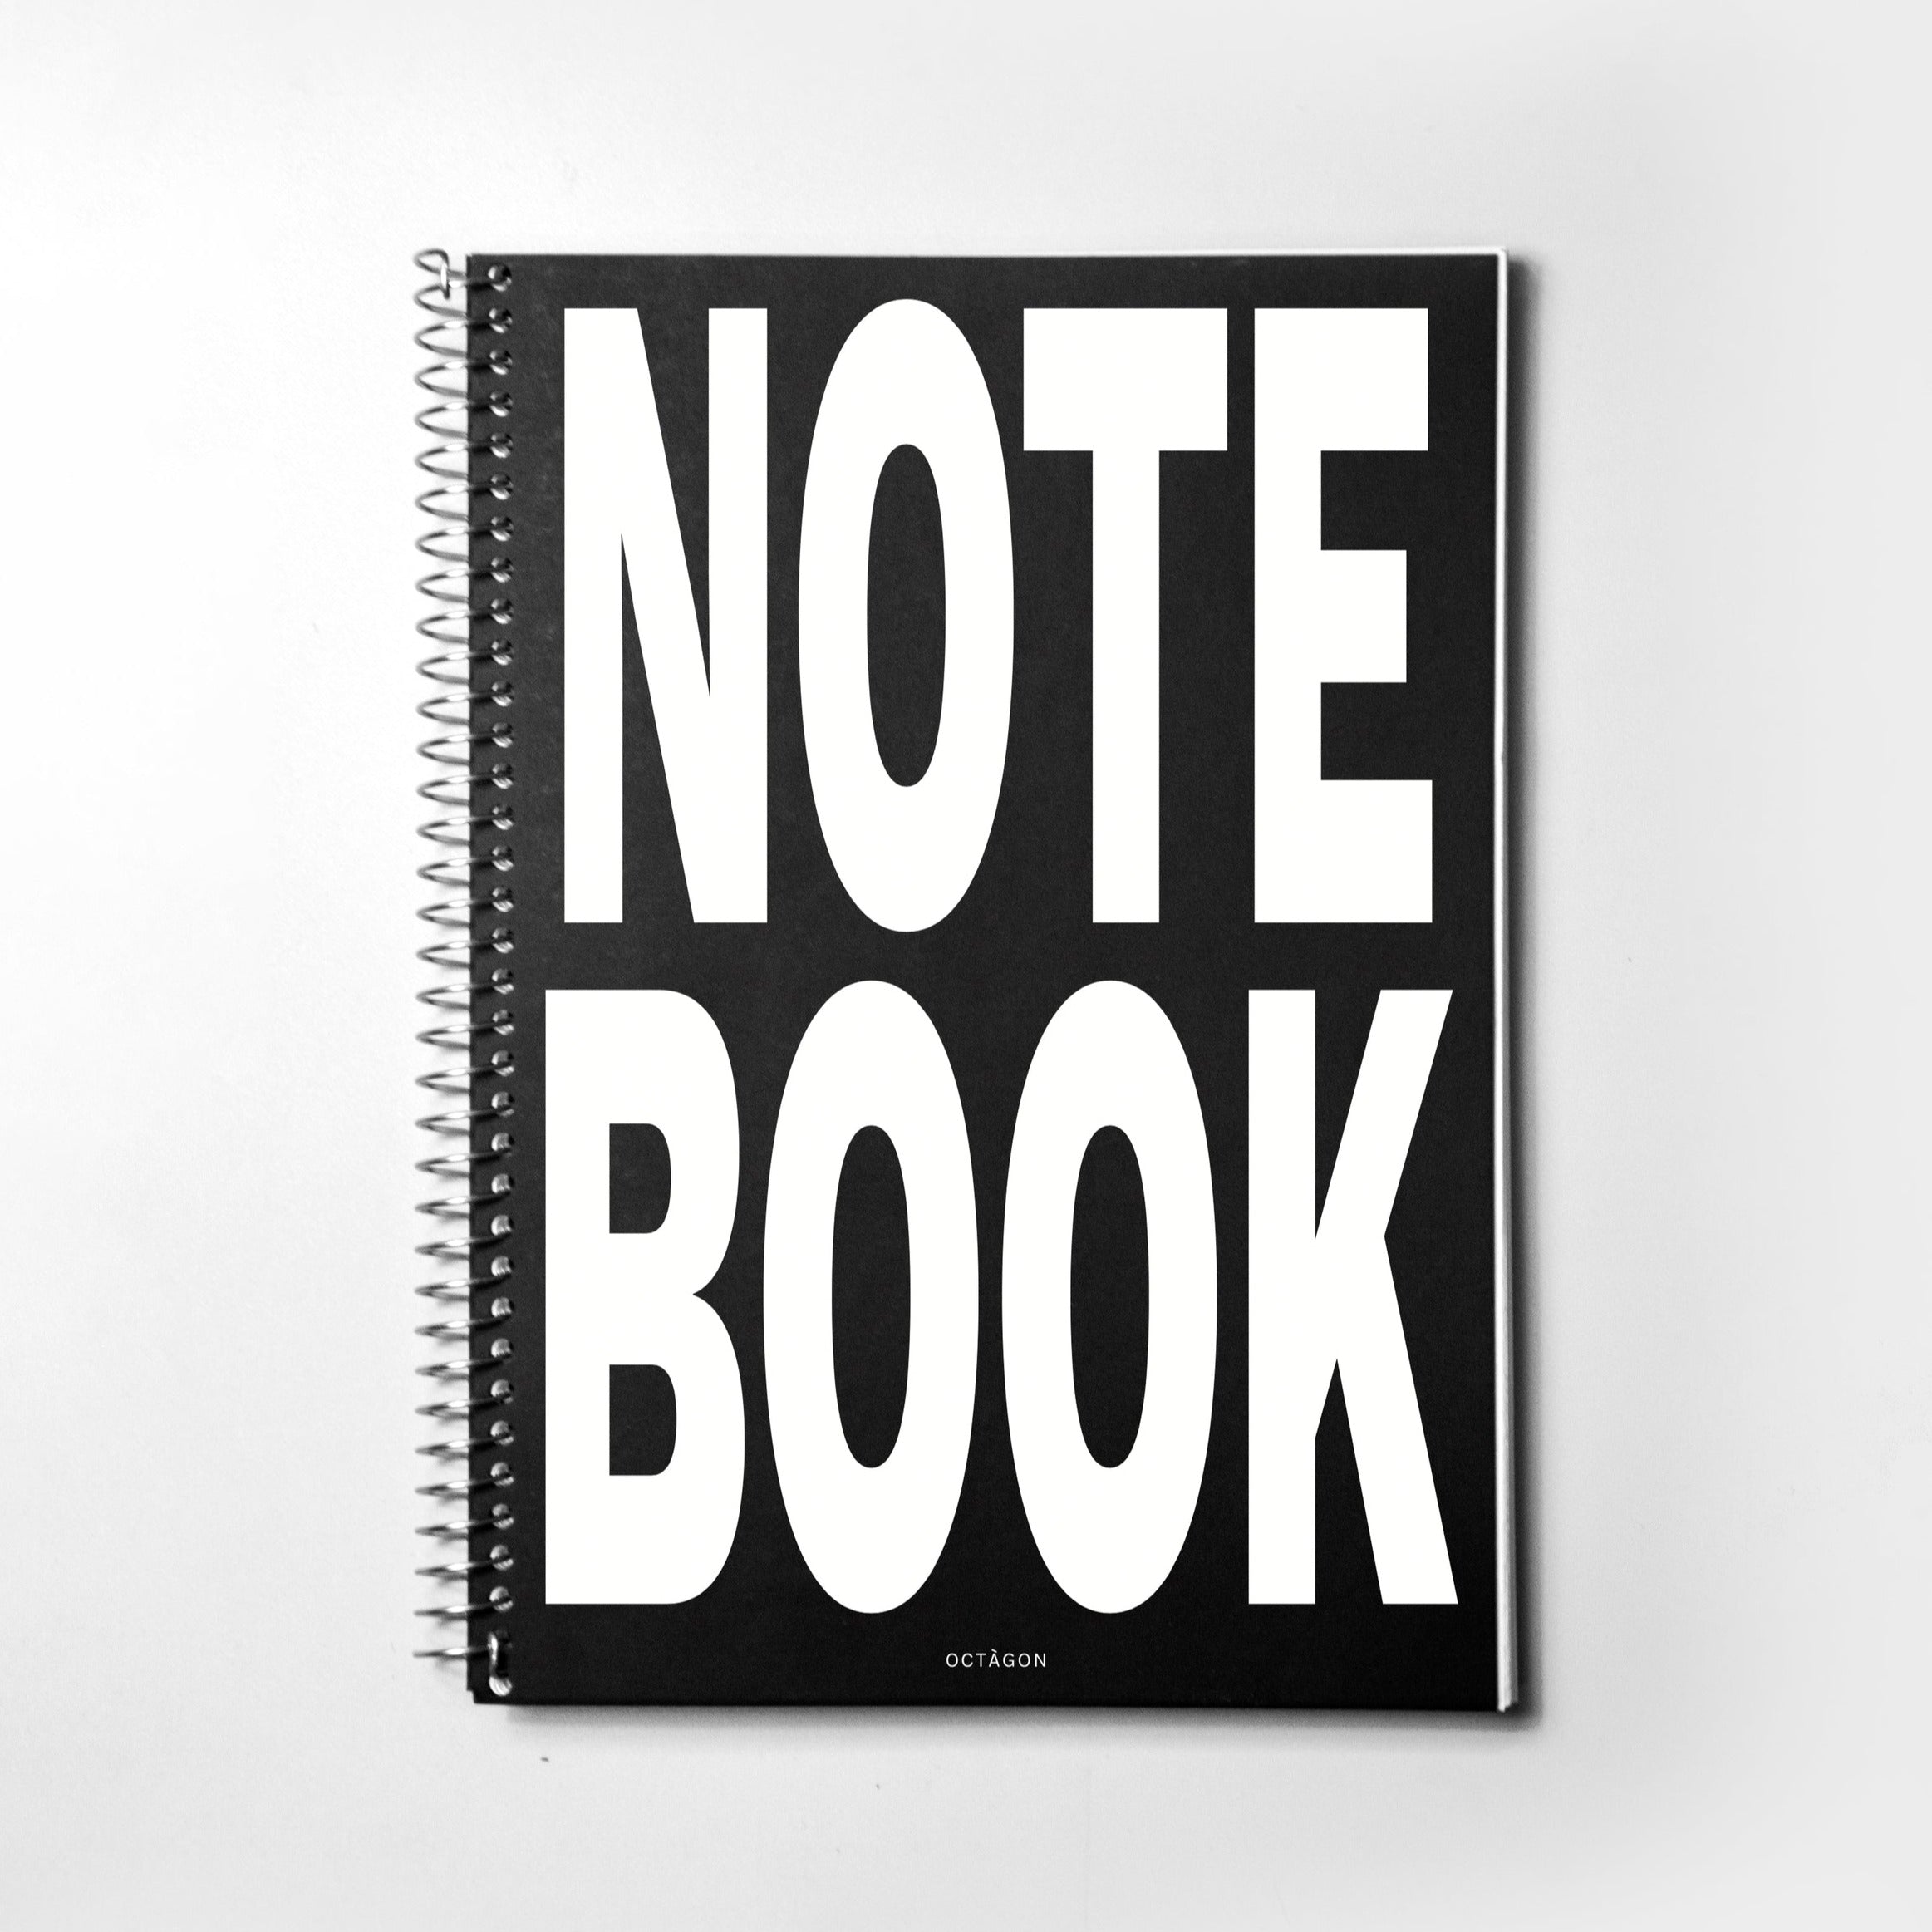 Best spiral notebook A4 size. Octàgon Design